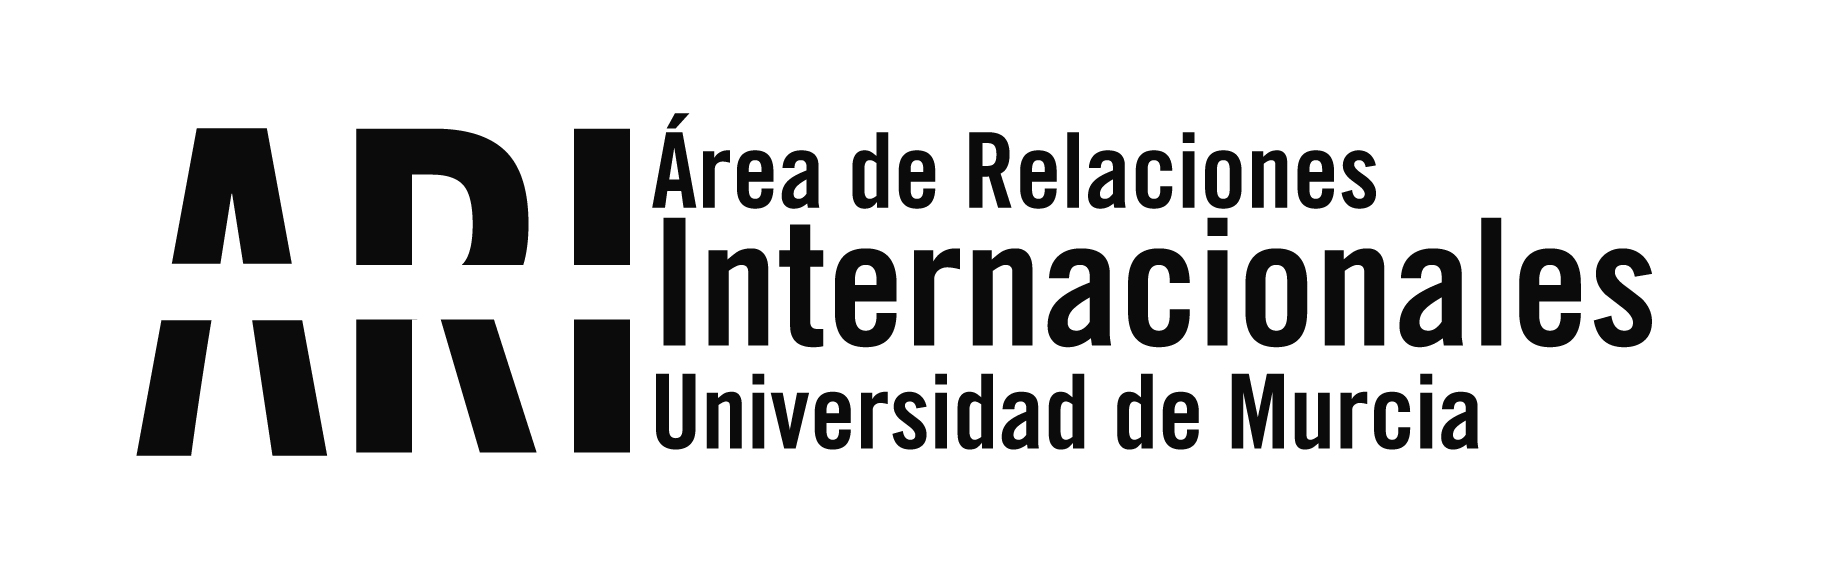 2014-10 II Encuentro ISEP Iberia - Eventos - Área de Relaciones Internacionales